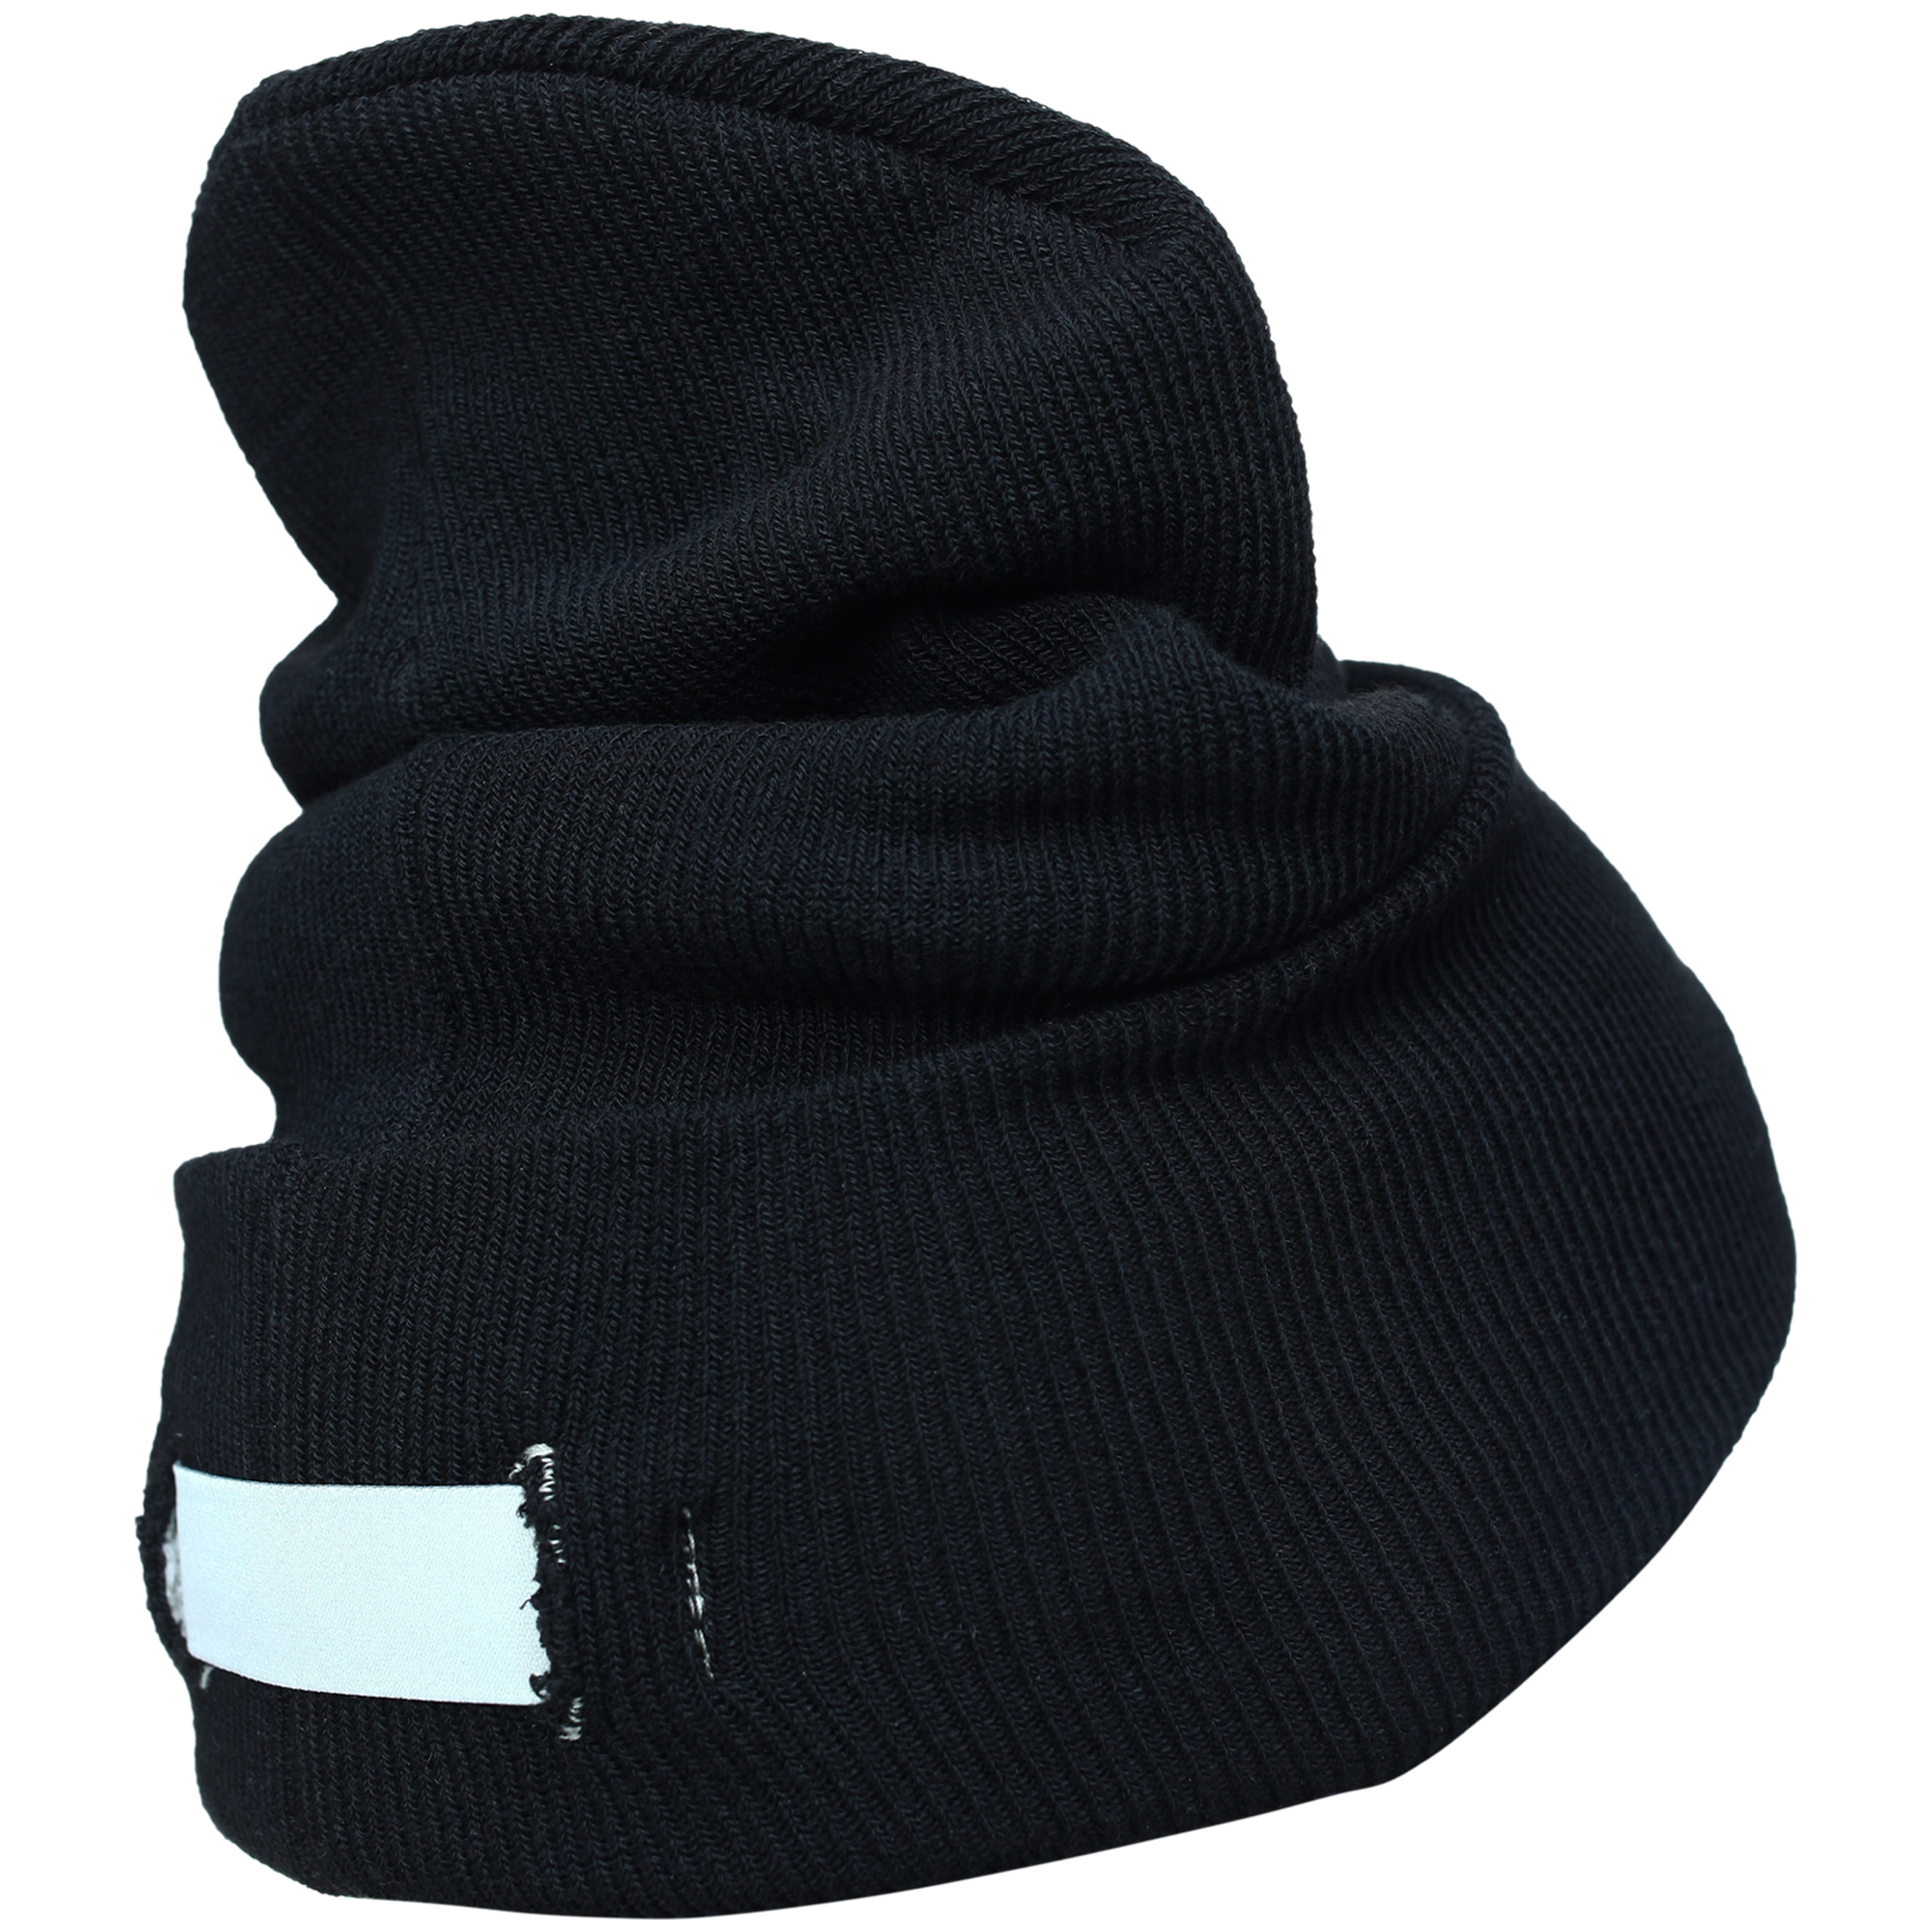 Черная шапка с подворотом B1ARCHIVE A001-1B1A0004-BLK, размер One Size - фото 2